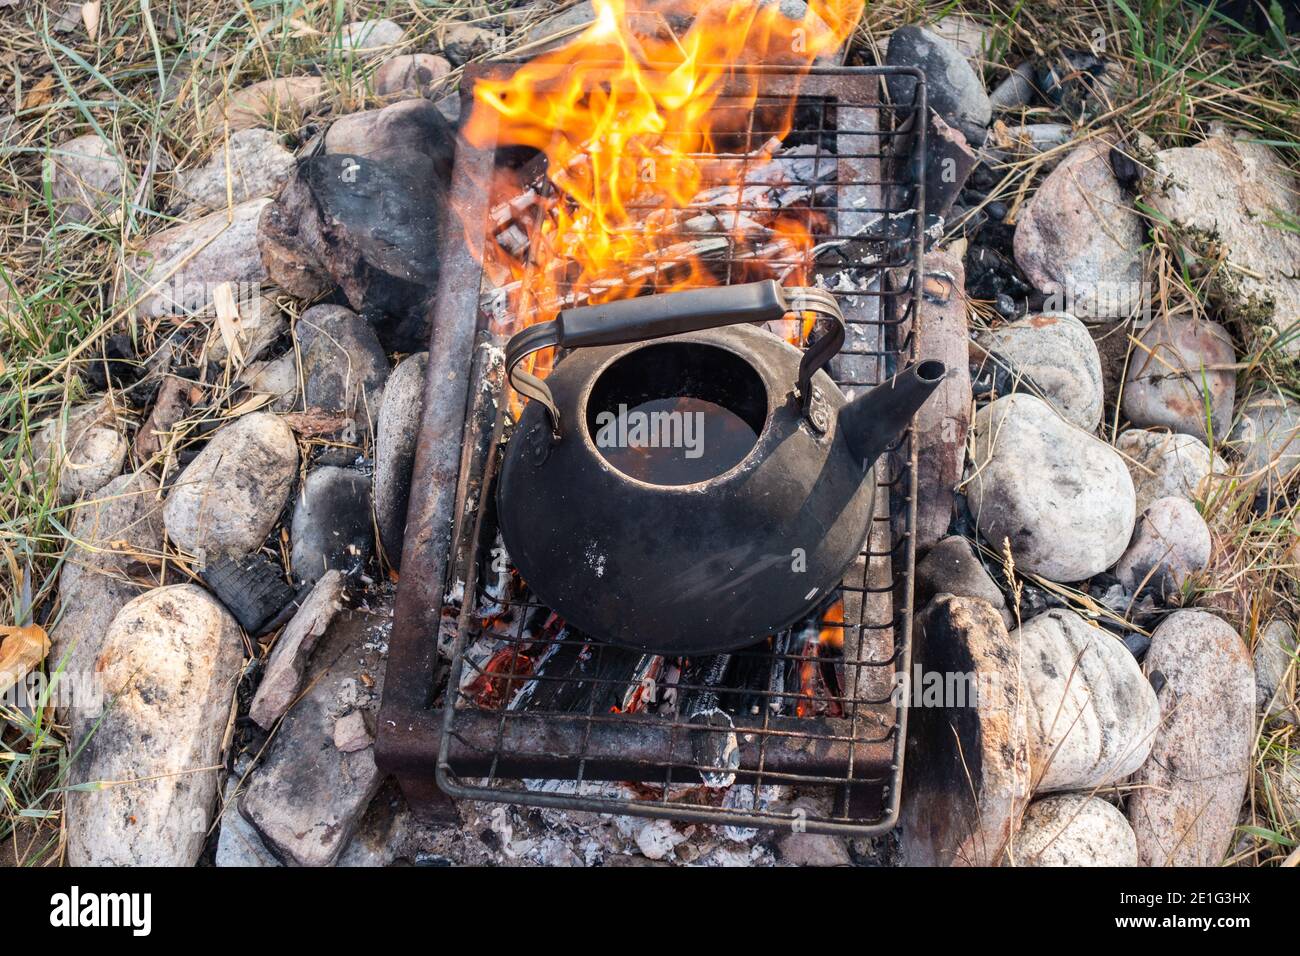 Une bouilloire avec de l'eau chaude au-dessus du feu. Théière antique sur pierre sur la grille au-dessus du feu pour faire du thé ou du café à l'extérieur.UN foyer spécial pour l'extérieur. Banque D'Images